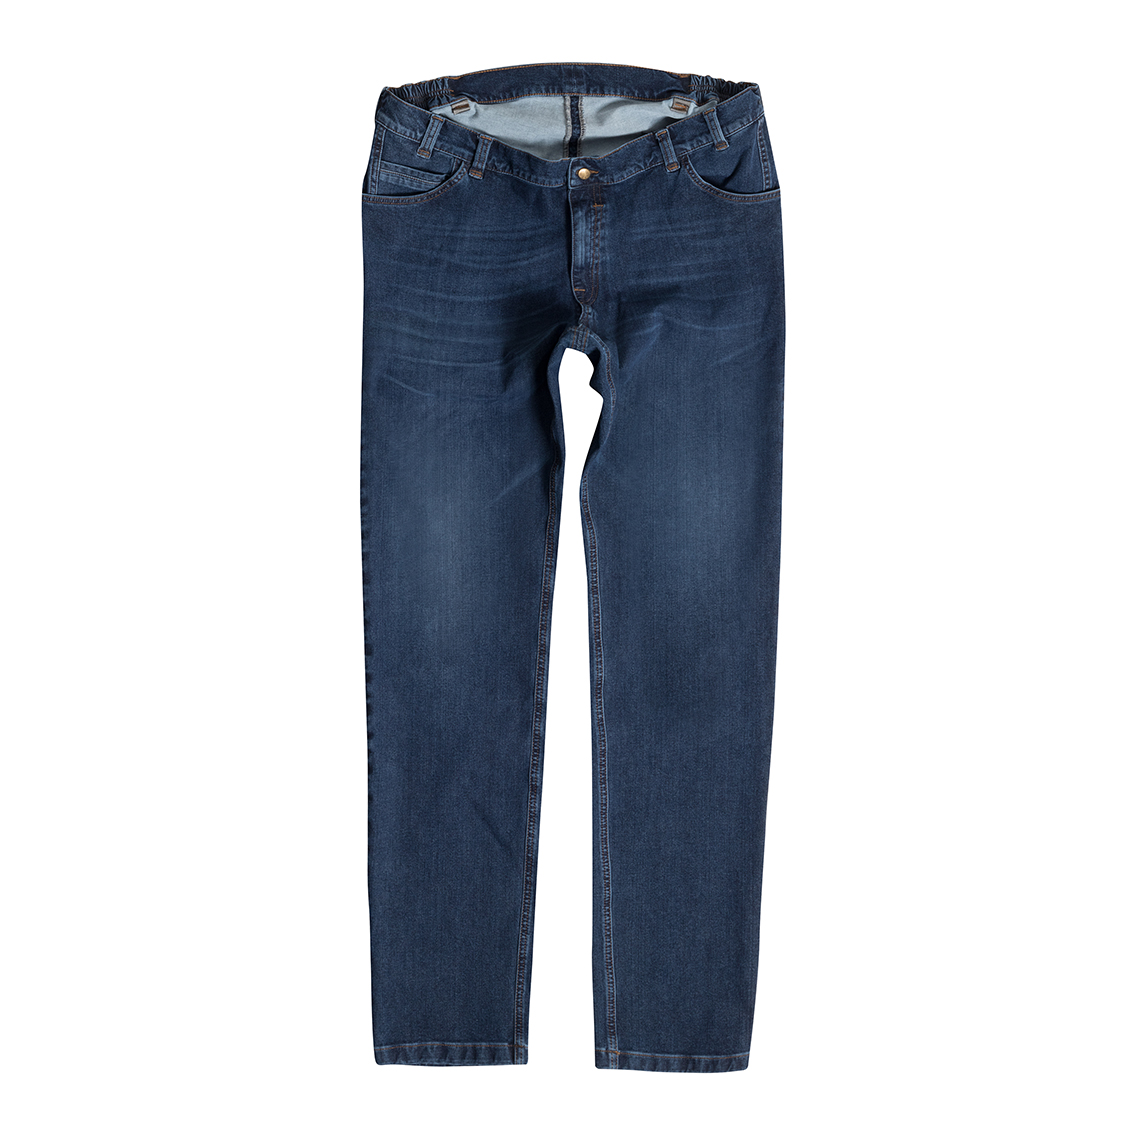 Men's Jeans Bi-Stretch, blue MIKE 10390 59